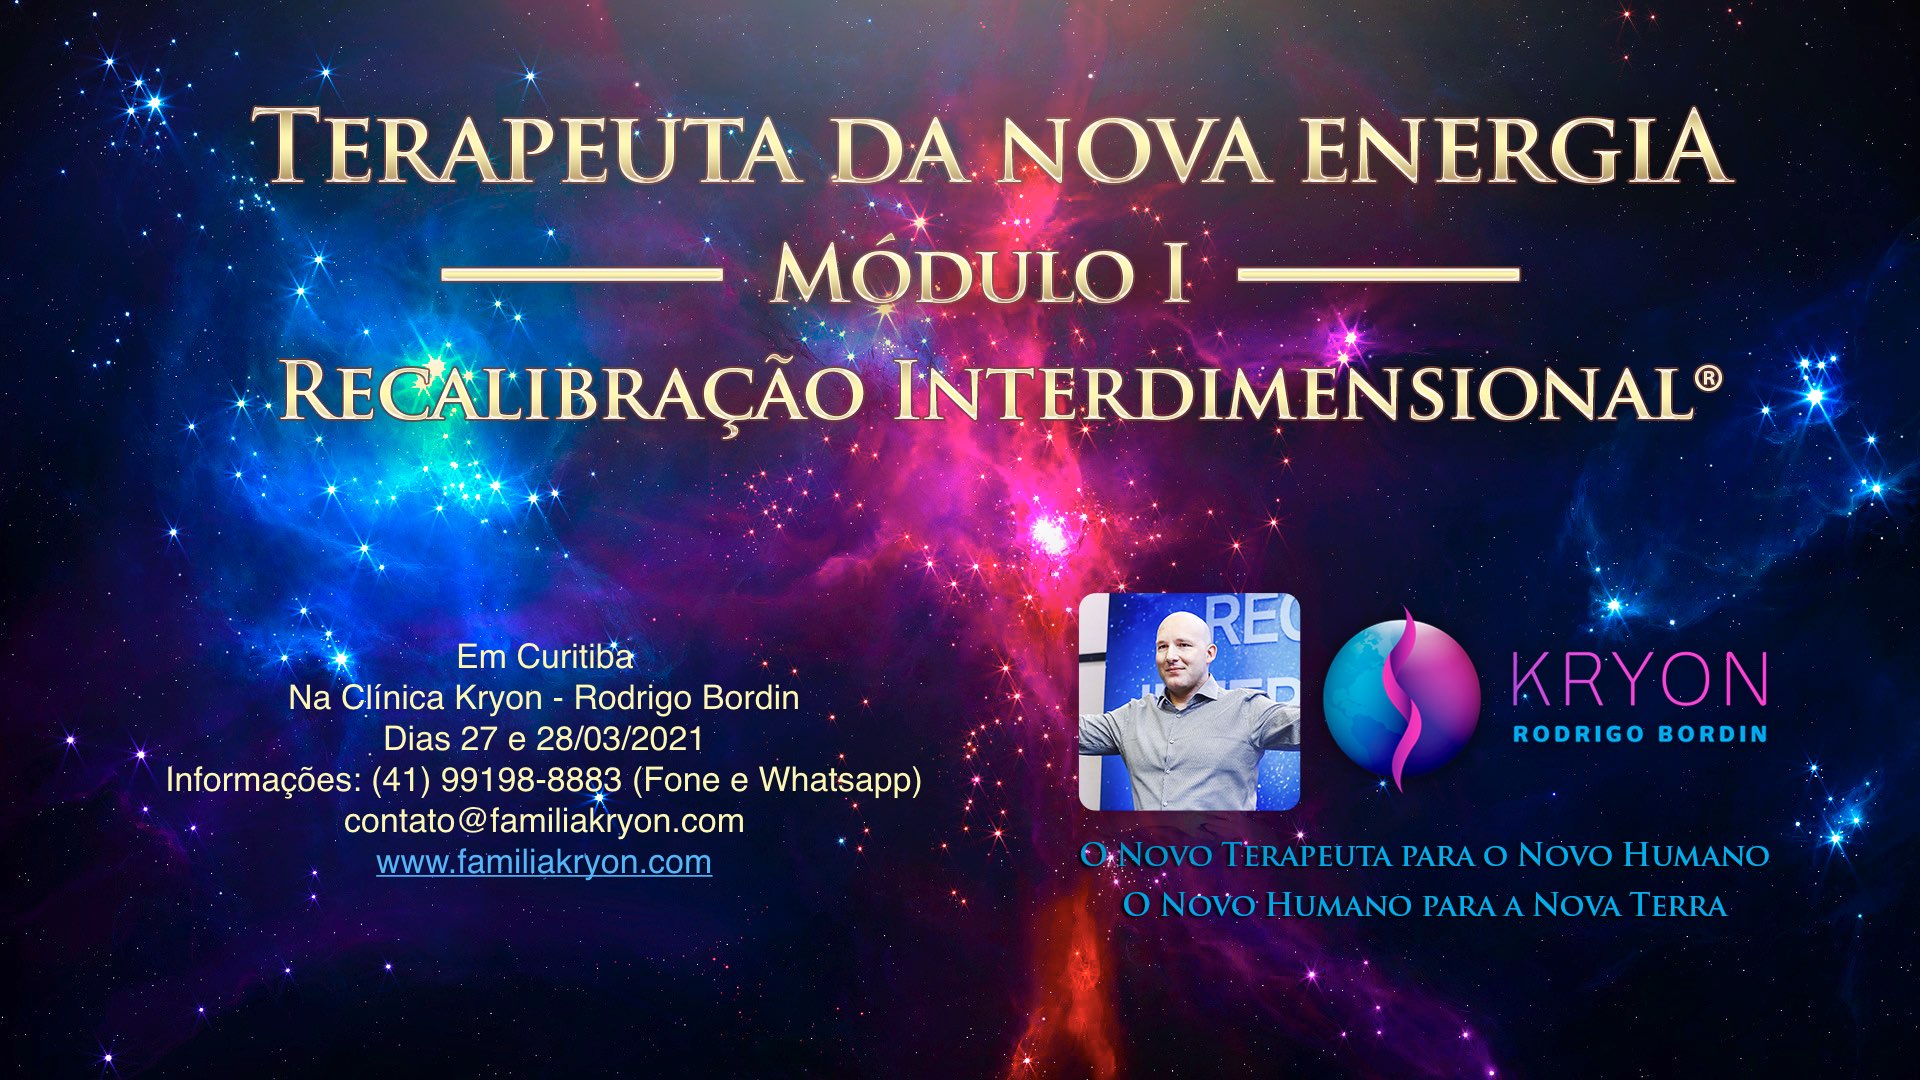 Terapeuta da Nova Energia® - Módulo I - Recalibração Interdimensional®